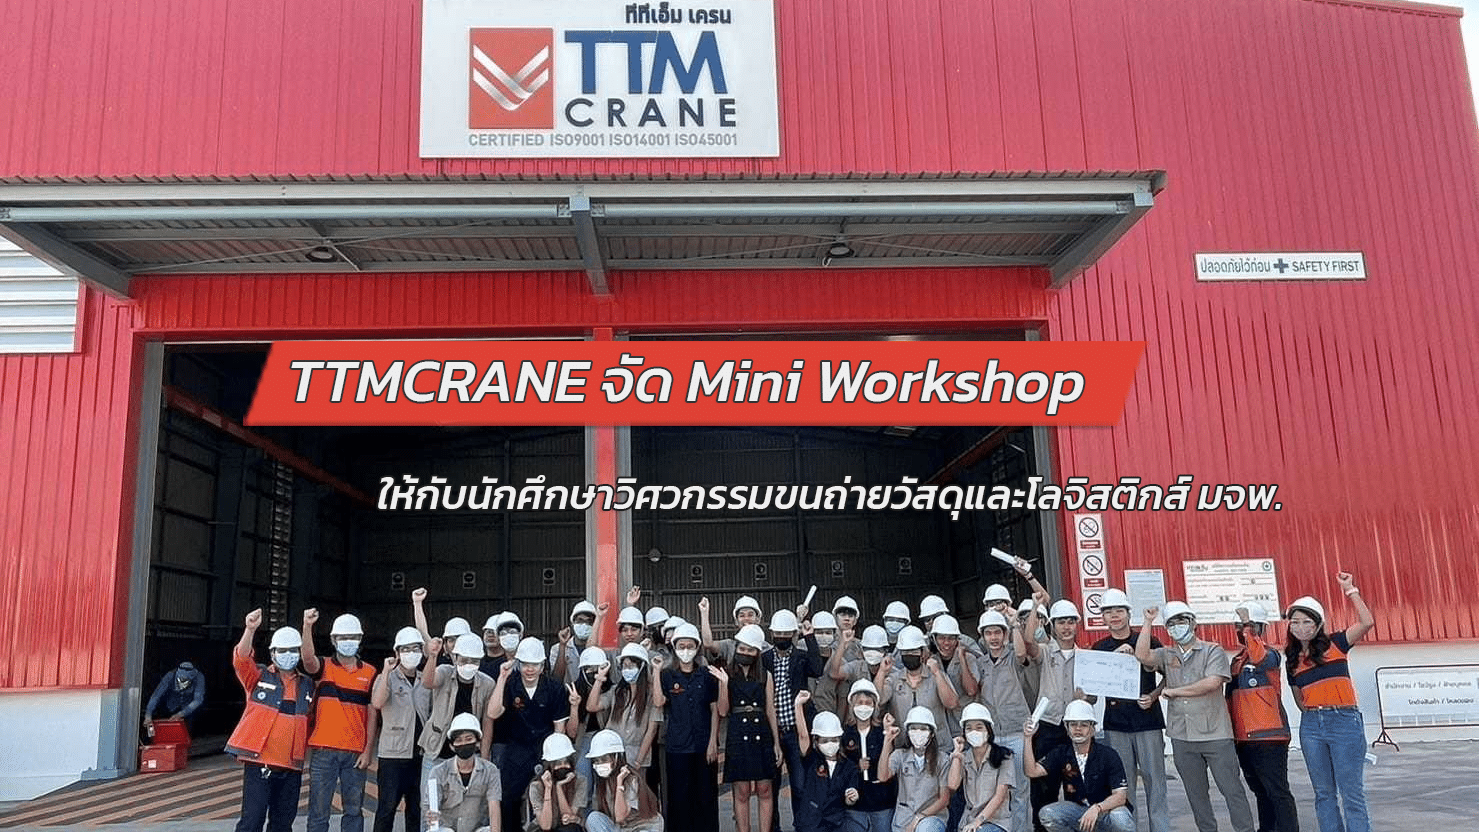 TTMCRANE จัด Mini Workshop ให้กับนักศึกษาวิศวกรรมขนถ่ายวัสดุและโลจิสติกส์ มจพ.